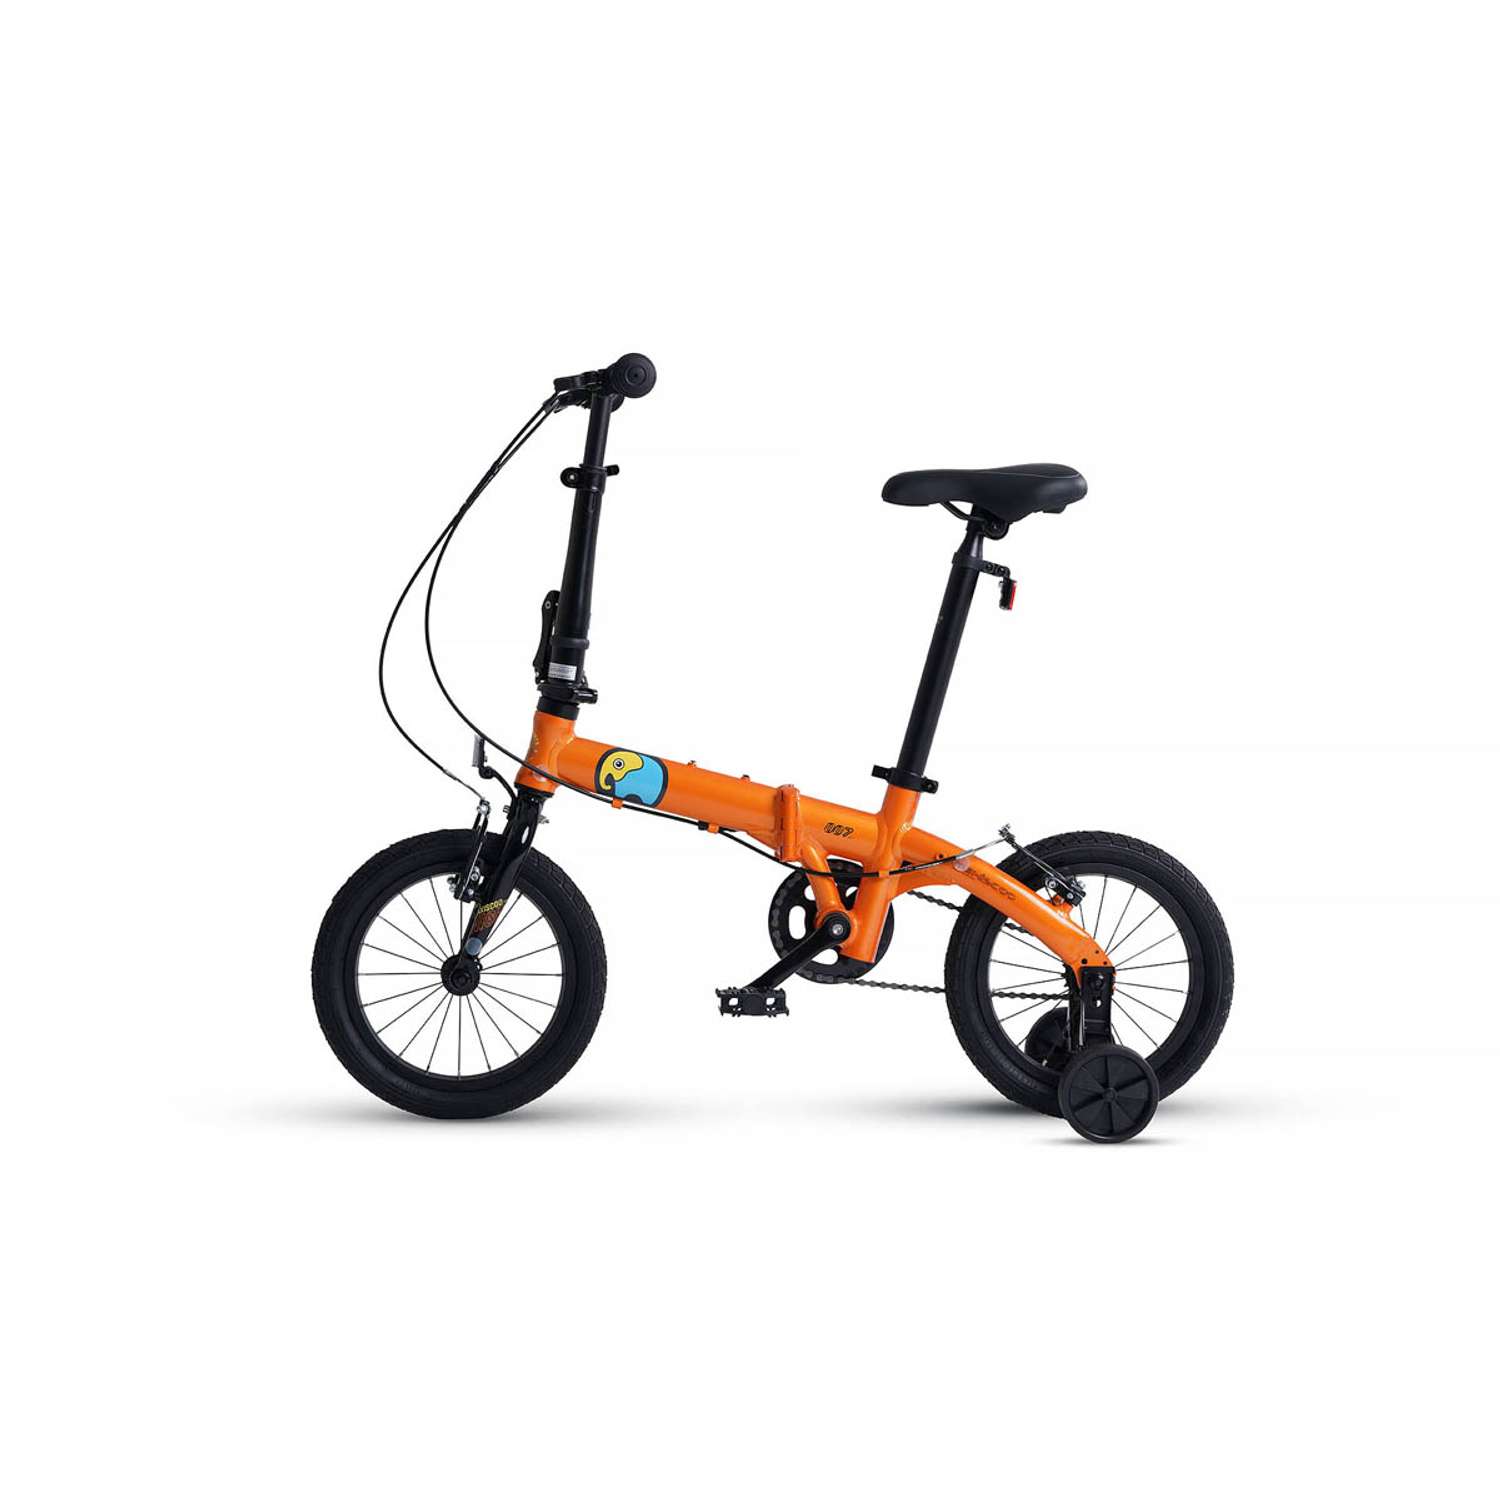 Велосипед Детский Складной Maxiscoo S007 стандарт 14 оранжевый - фото 3